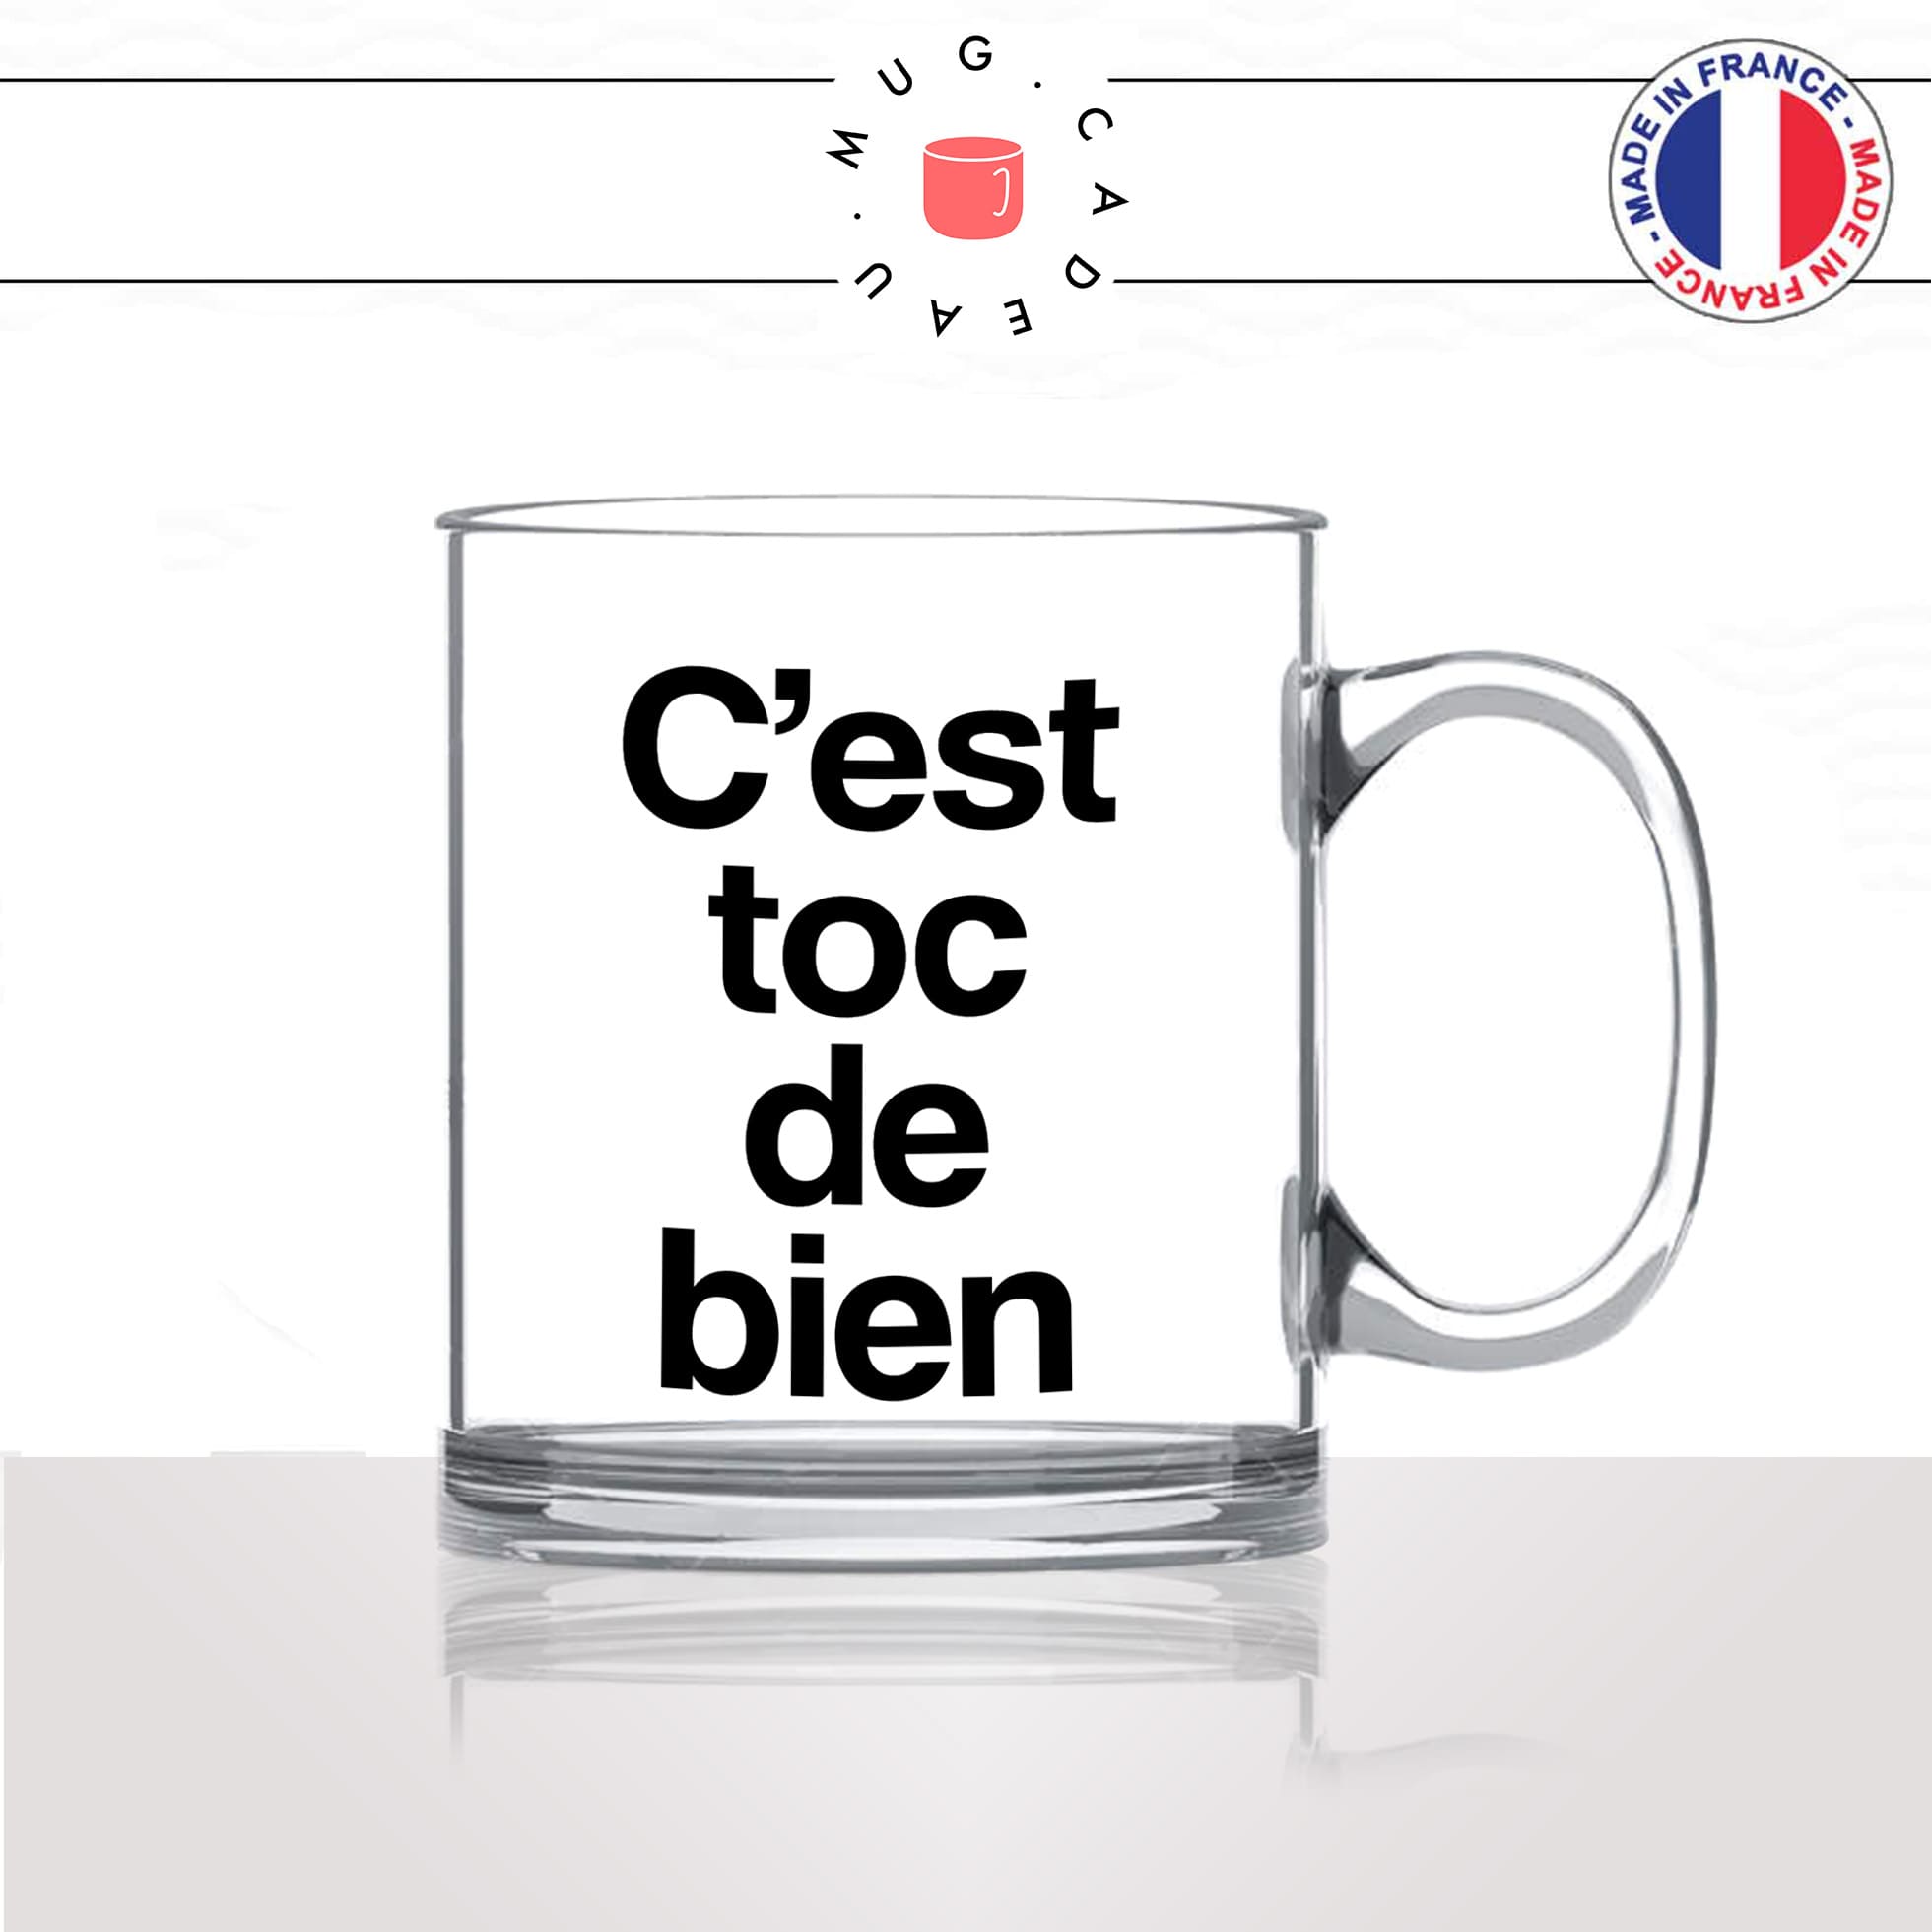 mug-tasse-en-verre-transparent-glass-cest-toc-de-bien-trop-bien-corse-corsica-patois-langue-ile-de-beauté-idée-cadeau-fun-cool-café-thé2